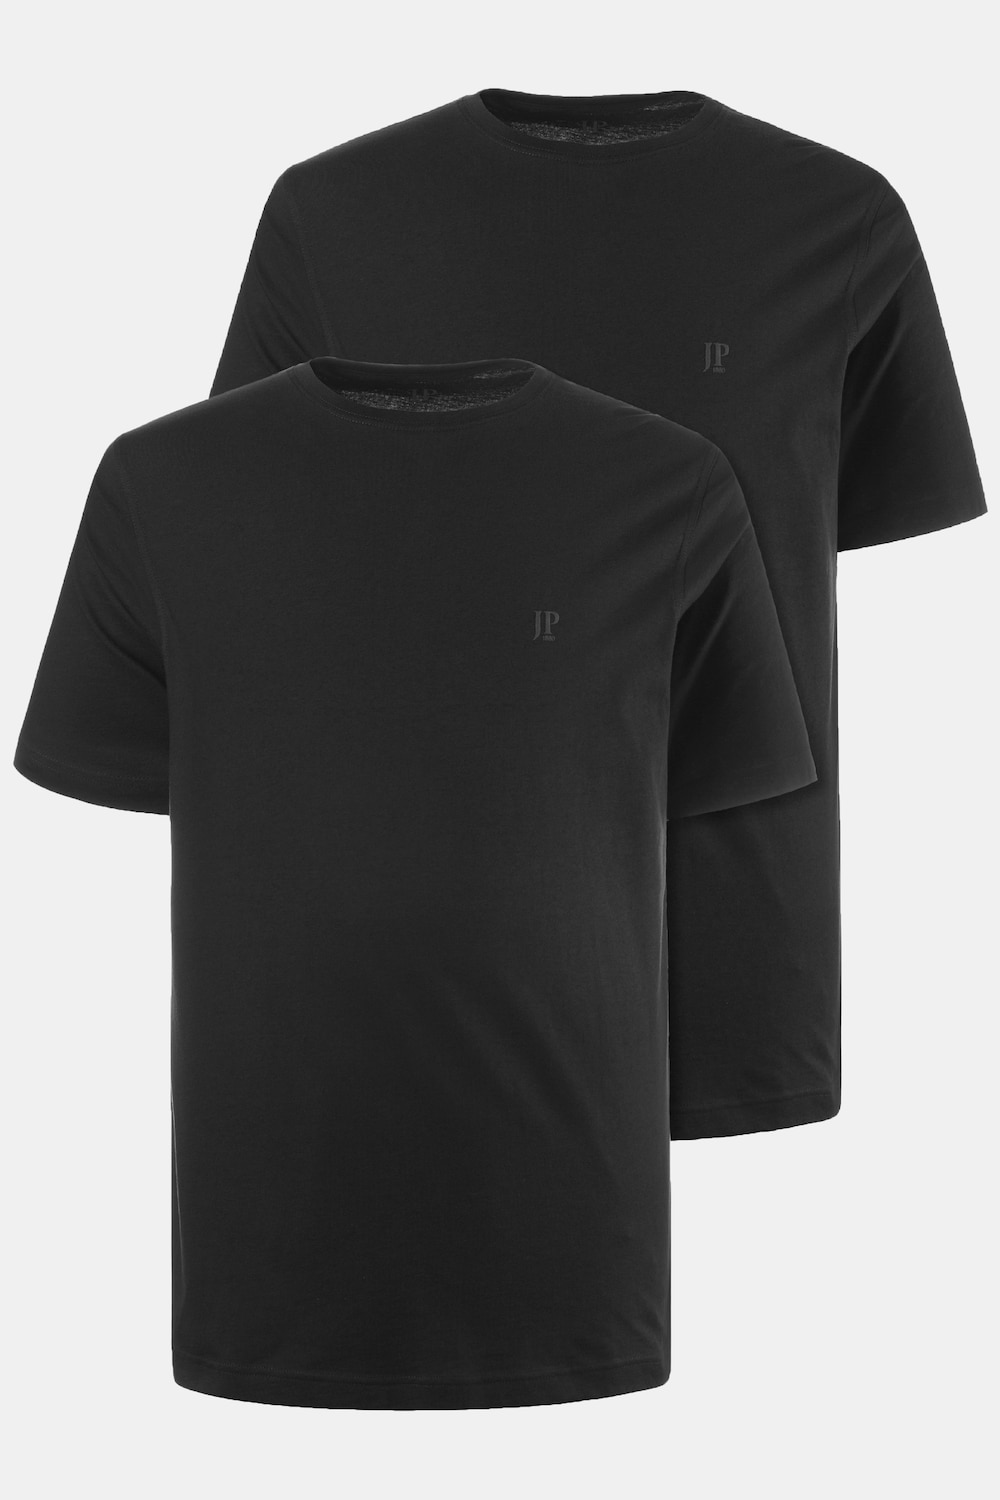 Große Größen T-Shirts, Herren, schwarz, Größe: 6XL, Baumwolle, JP1880